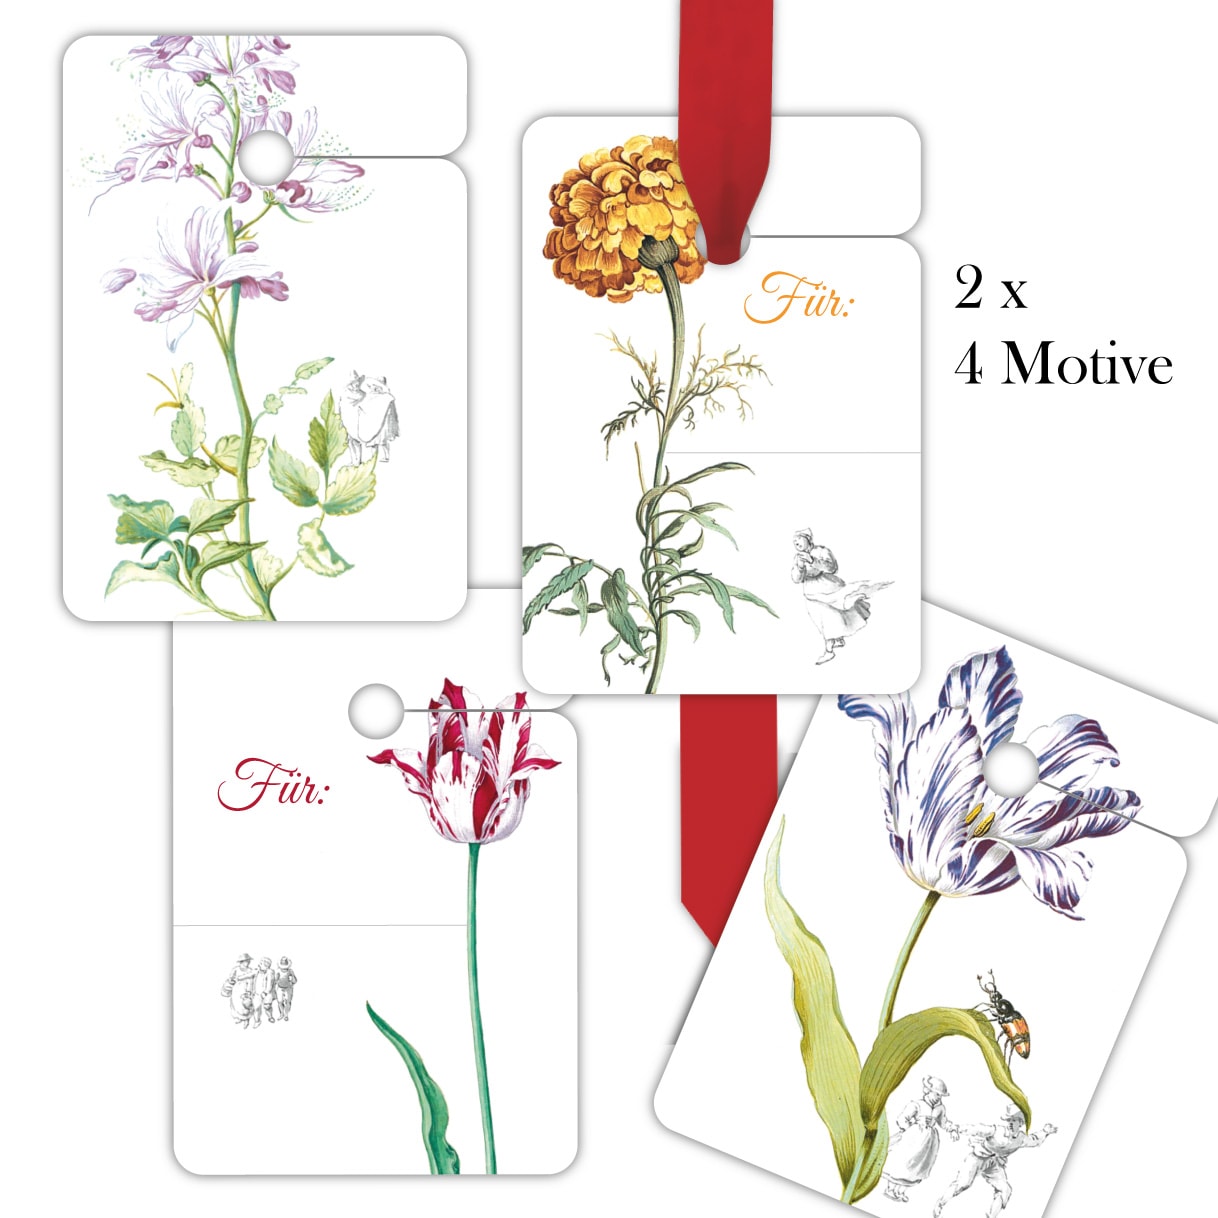 Kartenkaufrausch: klassische Blumen Geschenkanhänger aus unserer Designer Papeterie in weiß